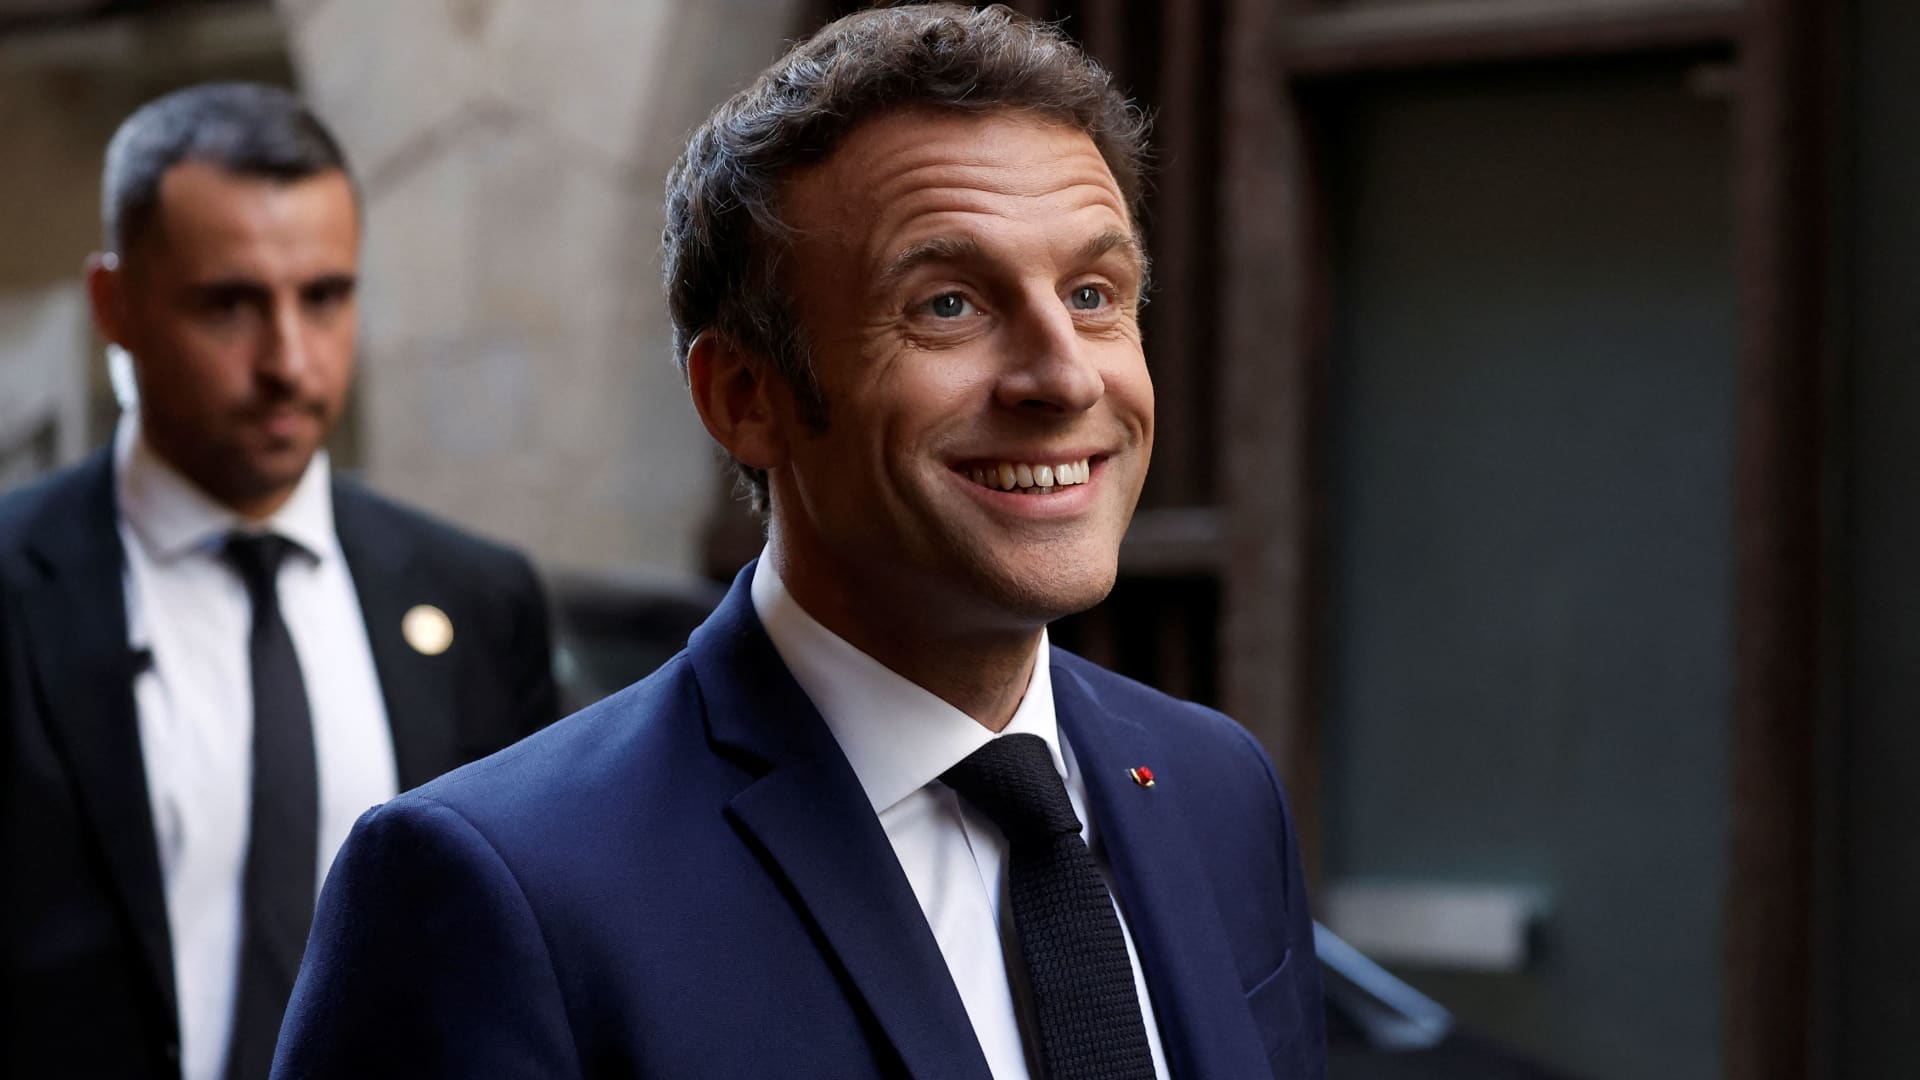 Rynki europejskie reagują na francuskie zwycięstwo Macrona